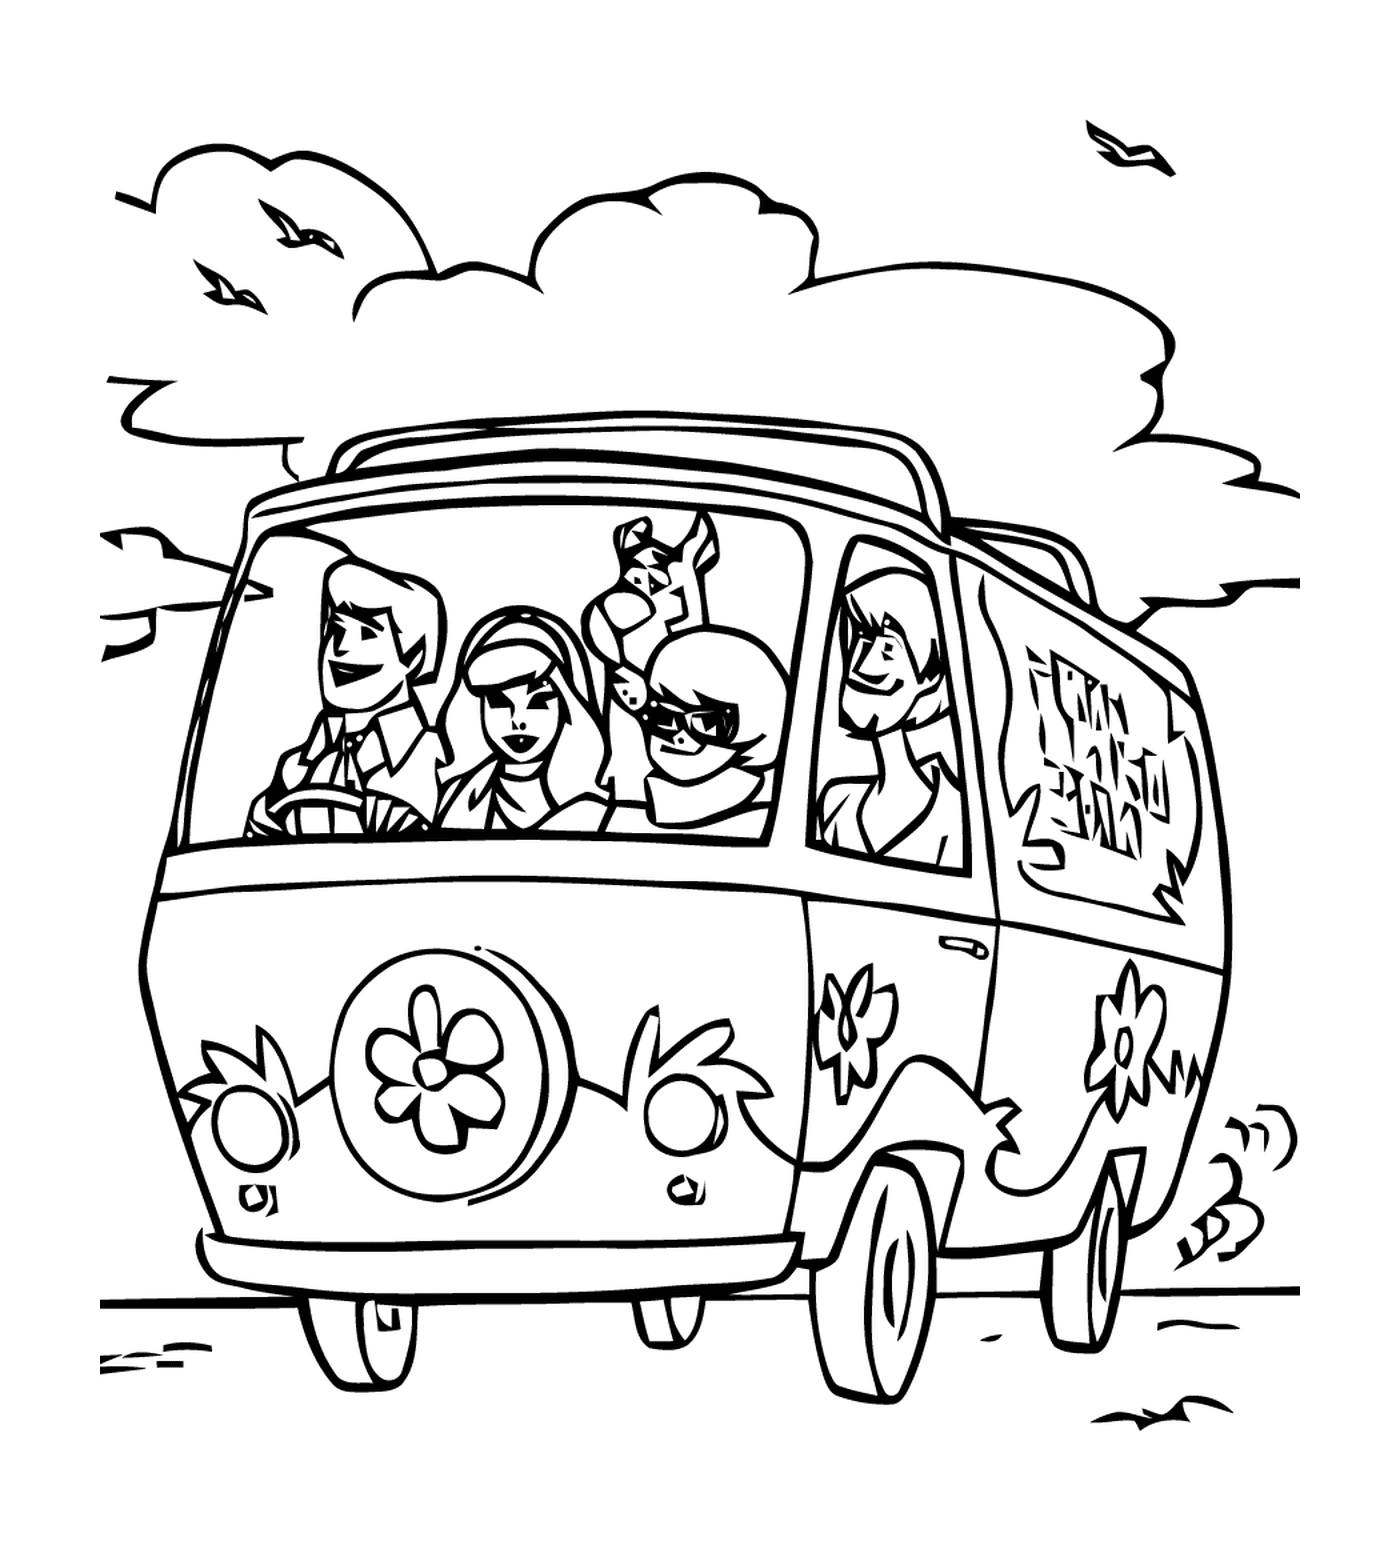  Un grupo de personas en un coche en la carretera 